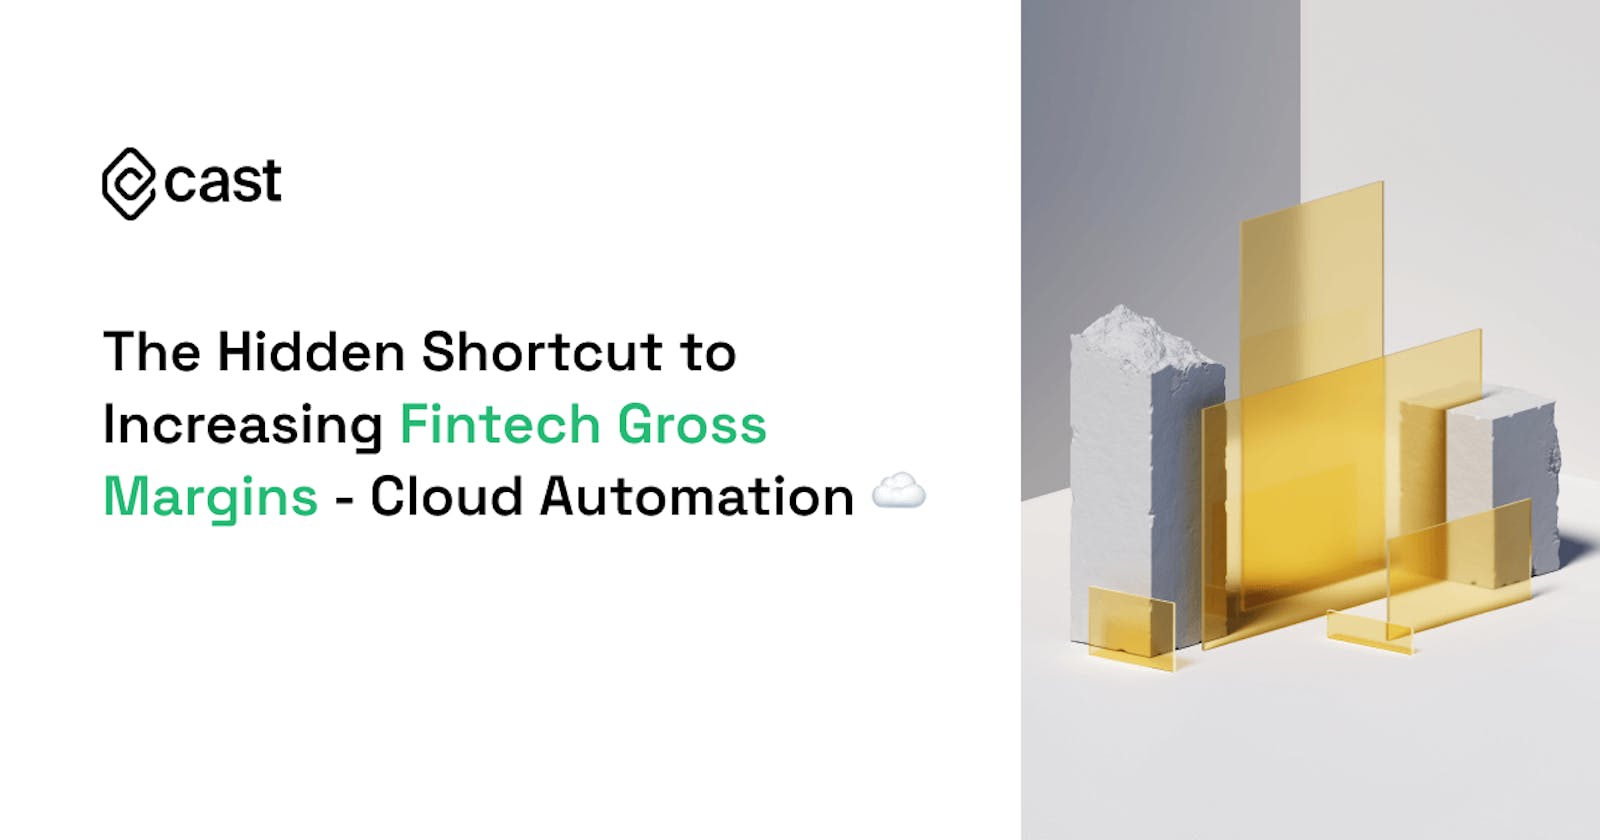 The Hidden Shortcut to Increasing Fintech Gross Margins - Cloud Automation